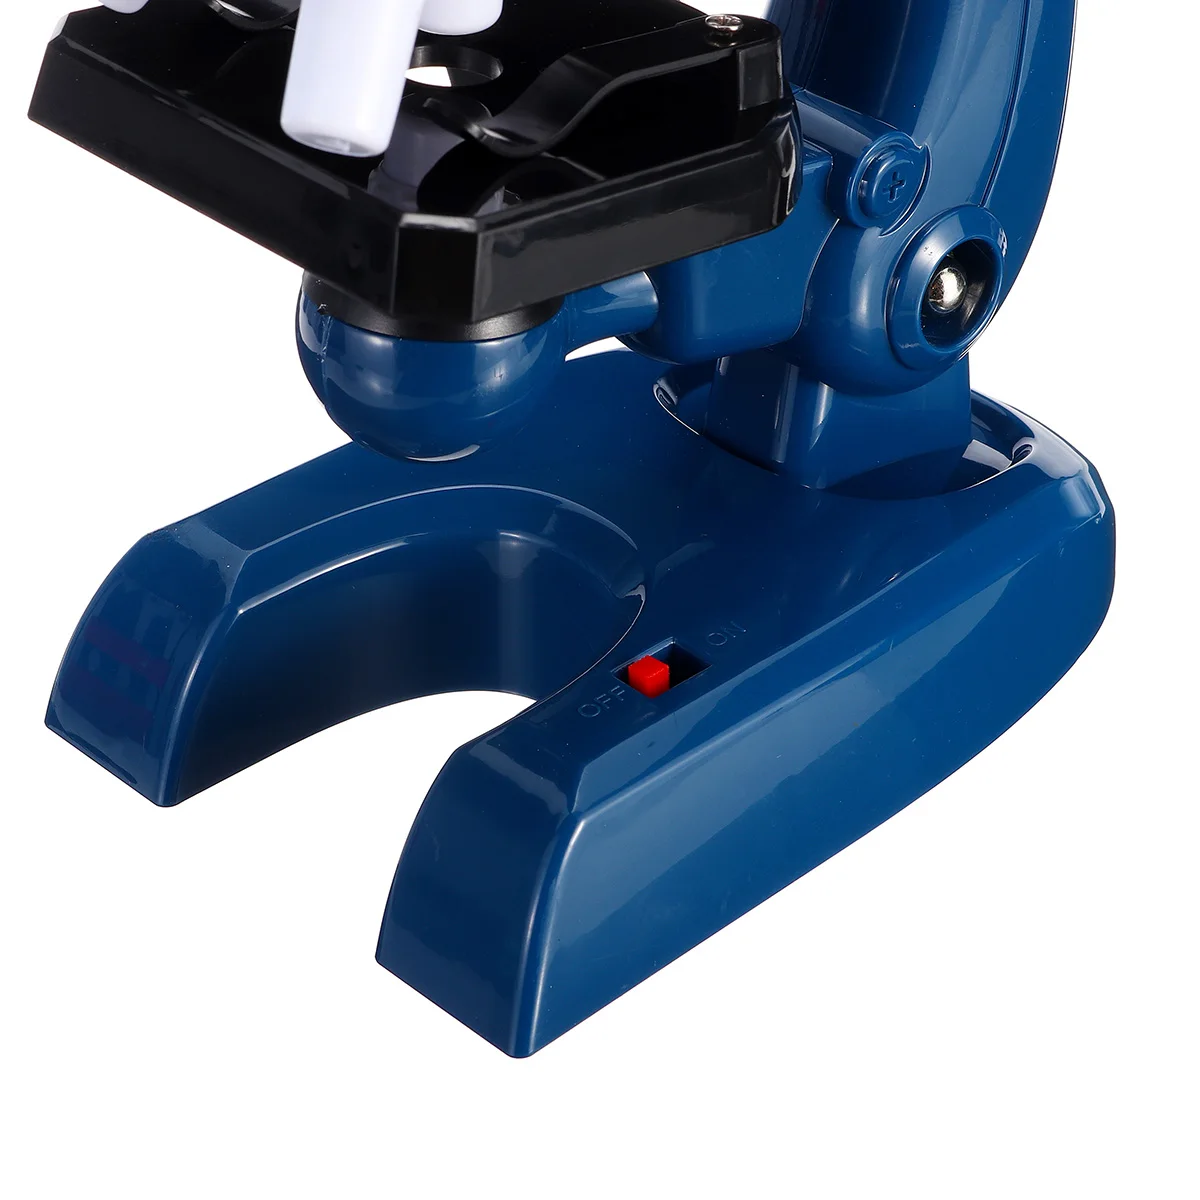 ZEAST микроскоп набор лабораторный светодиодный 100X-1200X домашняя школьная образовательная игрушка подарок Биологический микроскоп для детей